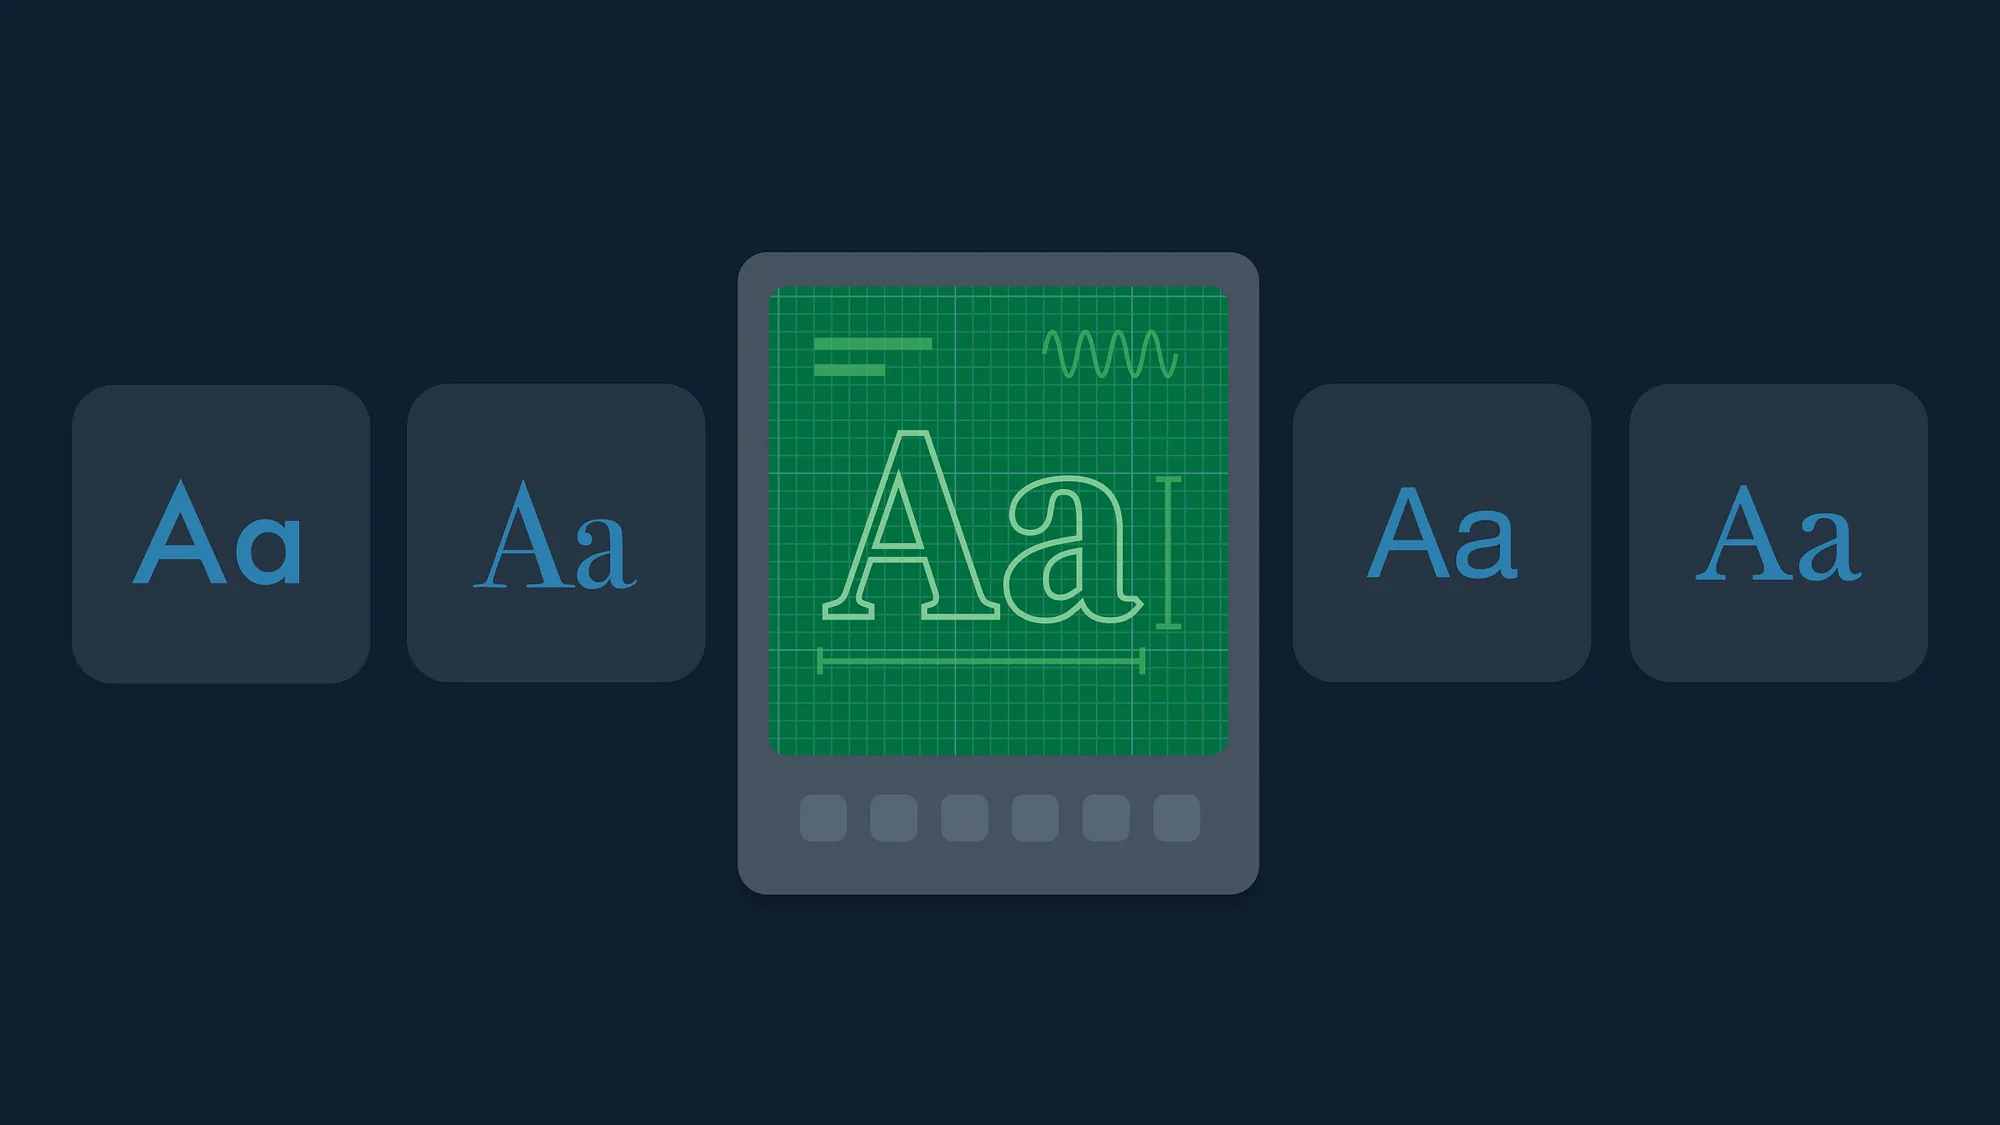 AI 能否替代设计师做出更好的字体选择和搭配？